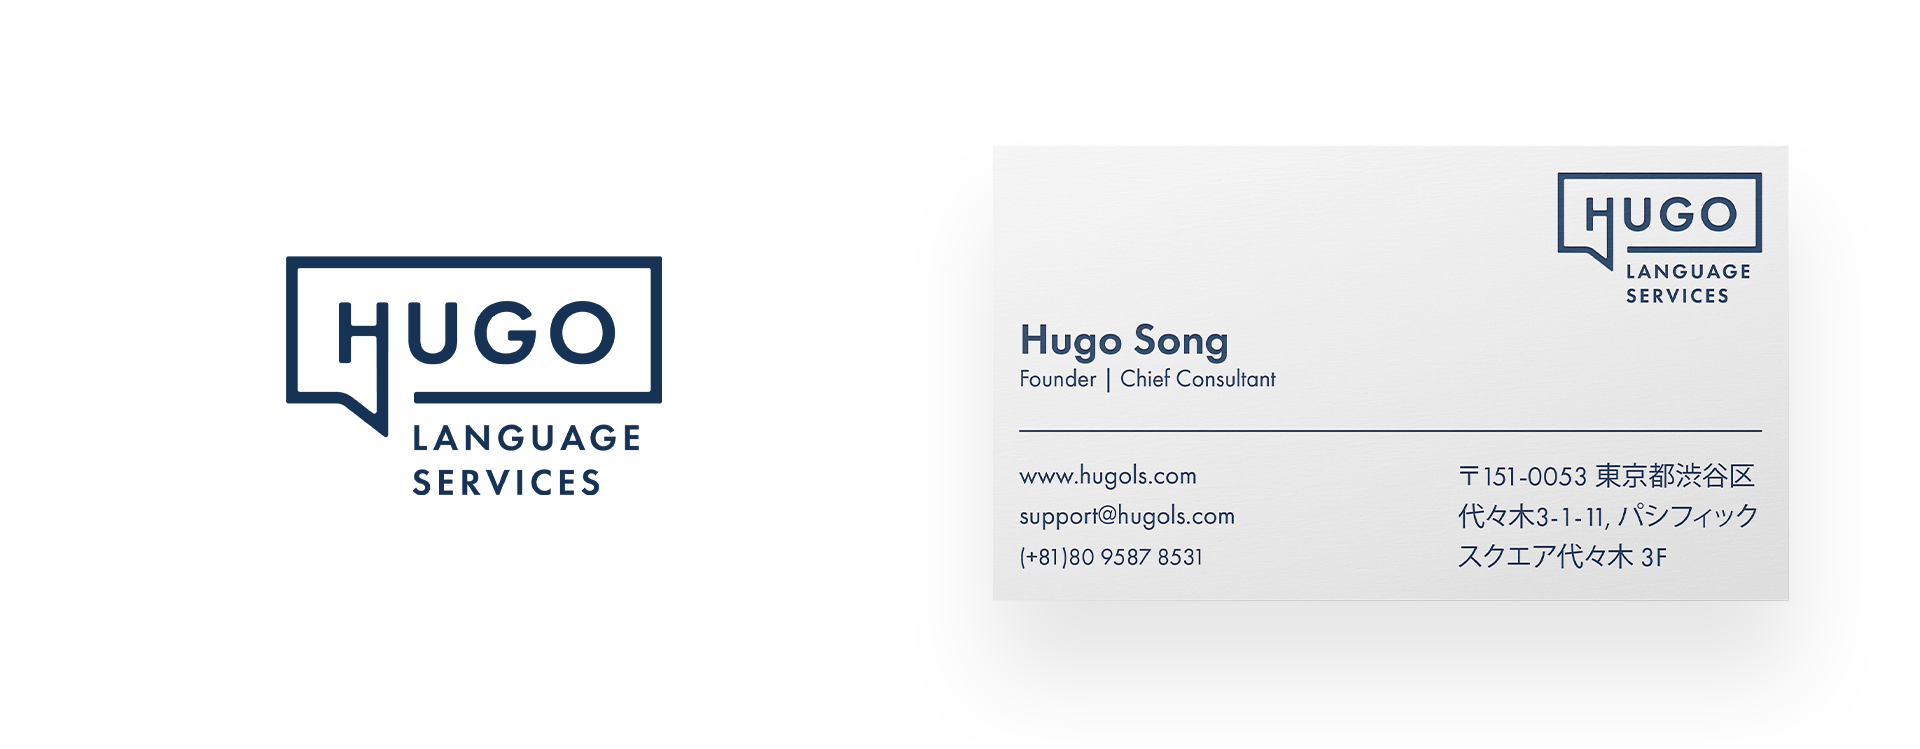 Hugo LS Business Card Design